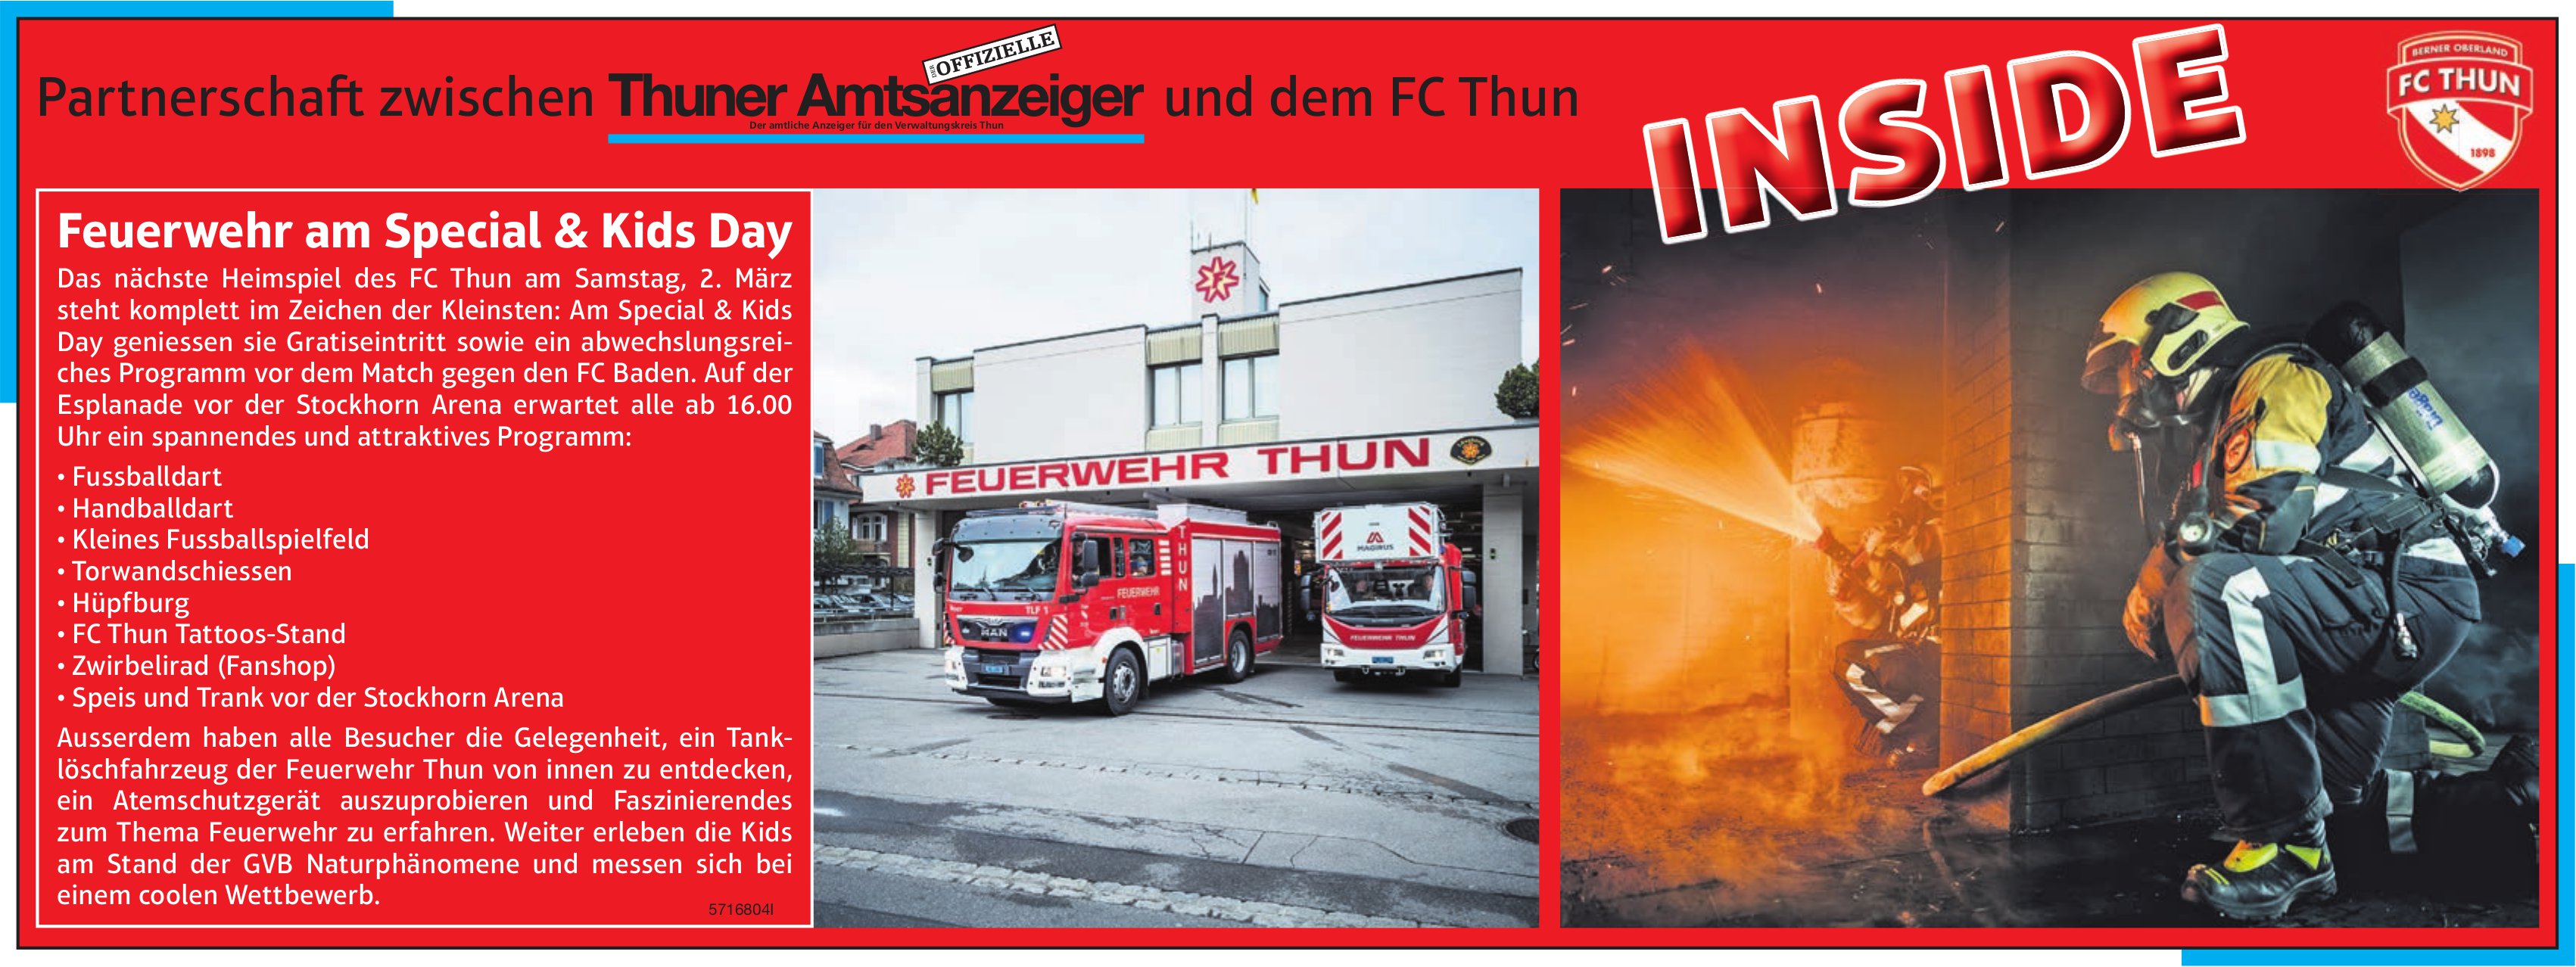 Thuner Amtsanzeiger / FC Thun, Inside: Feuerwehr am Special & Kids Day, 2. März